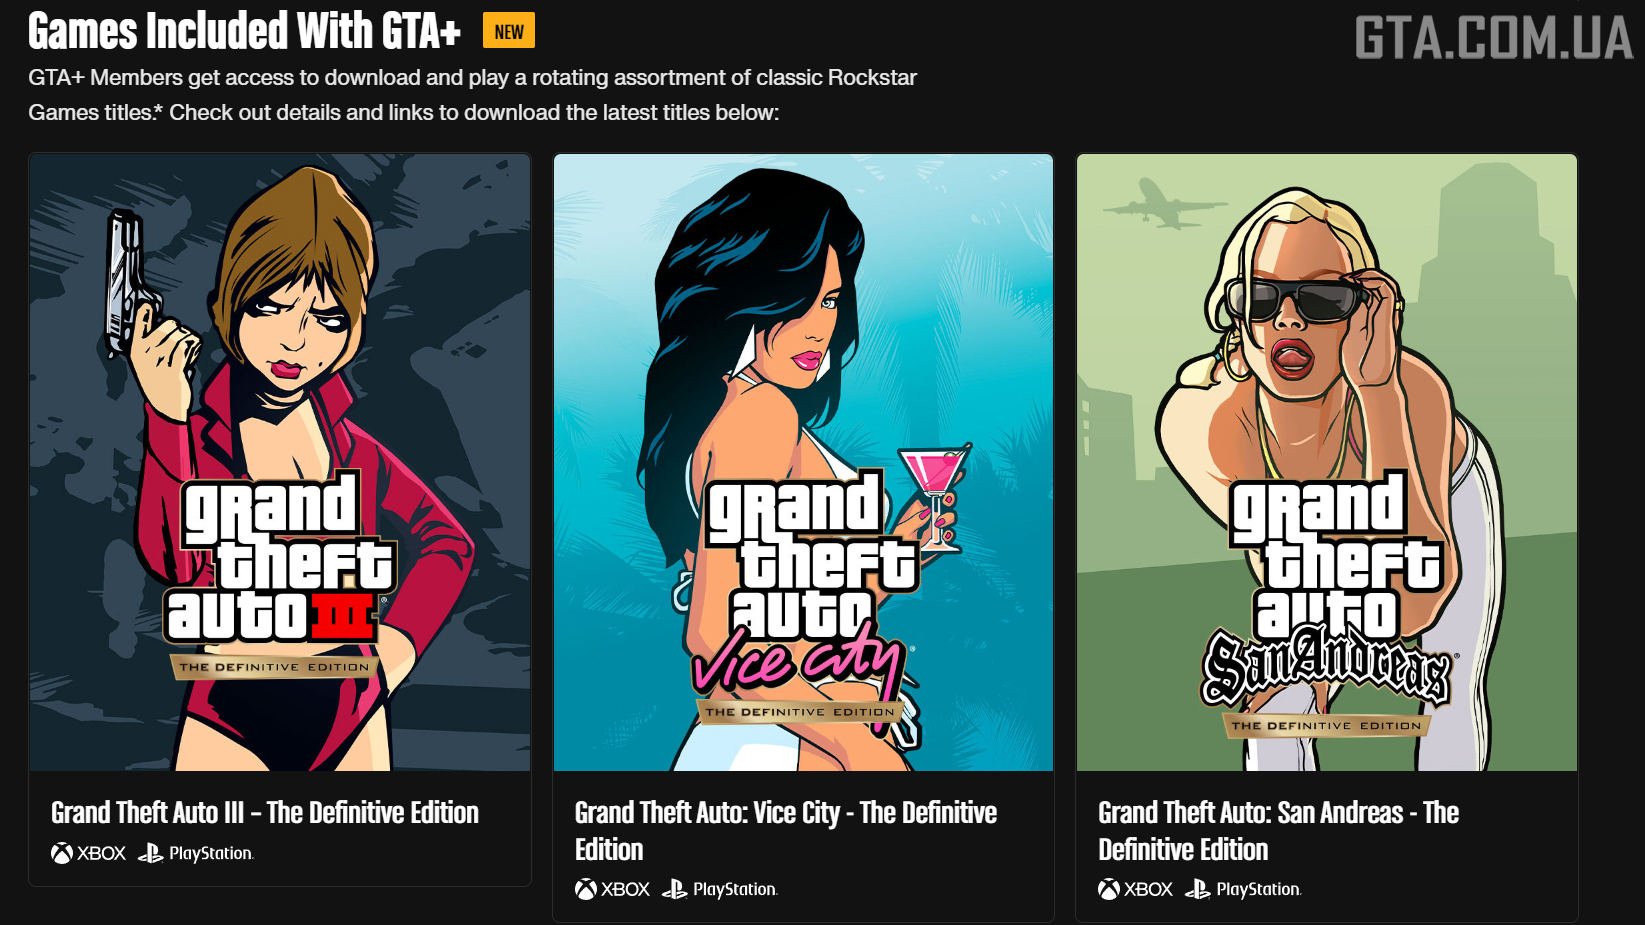 Новий розділ на офіційній сторінці GTA+, який присвячено доступним за передплатою іграм.